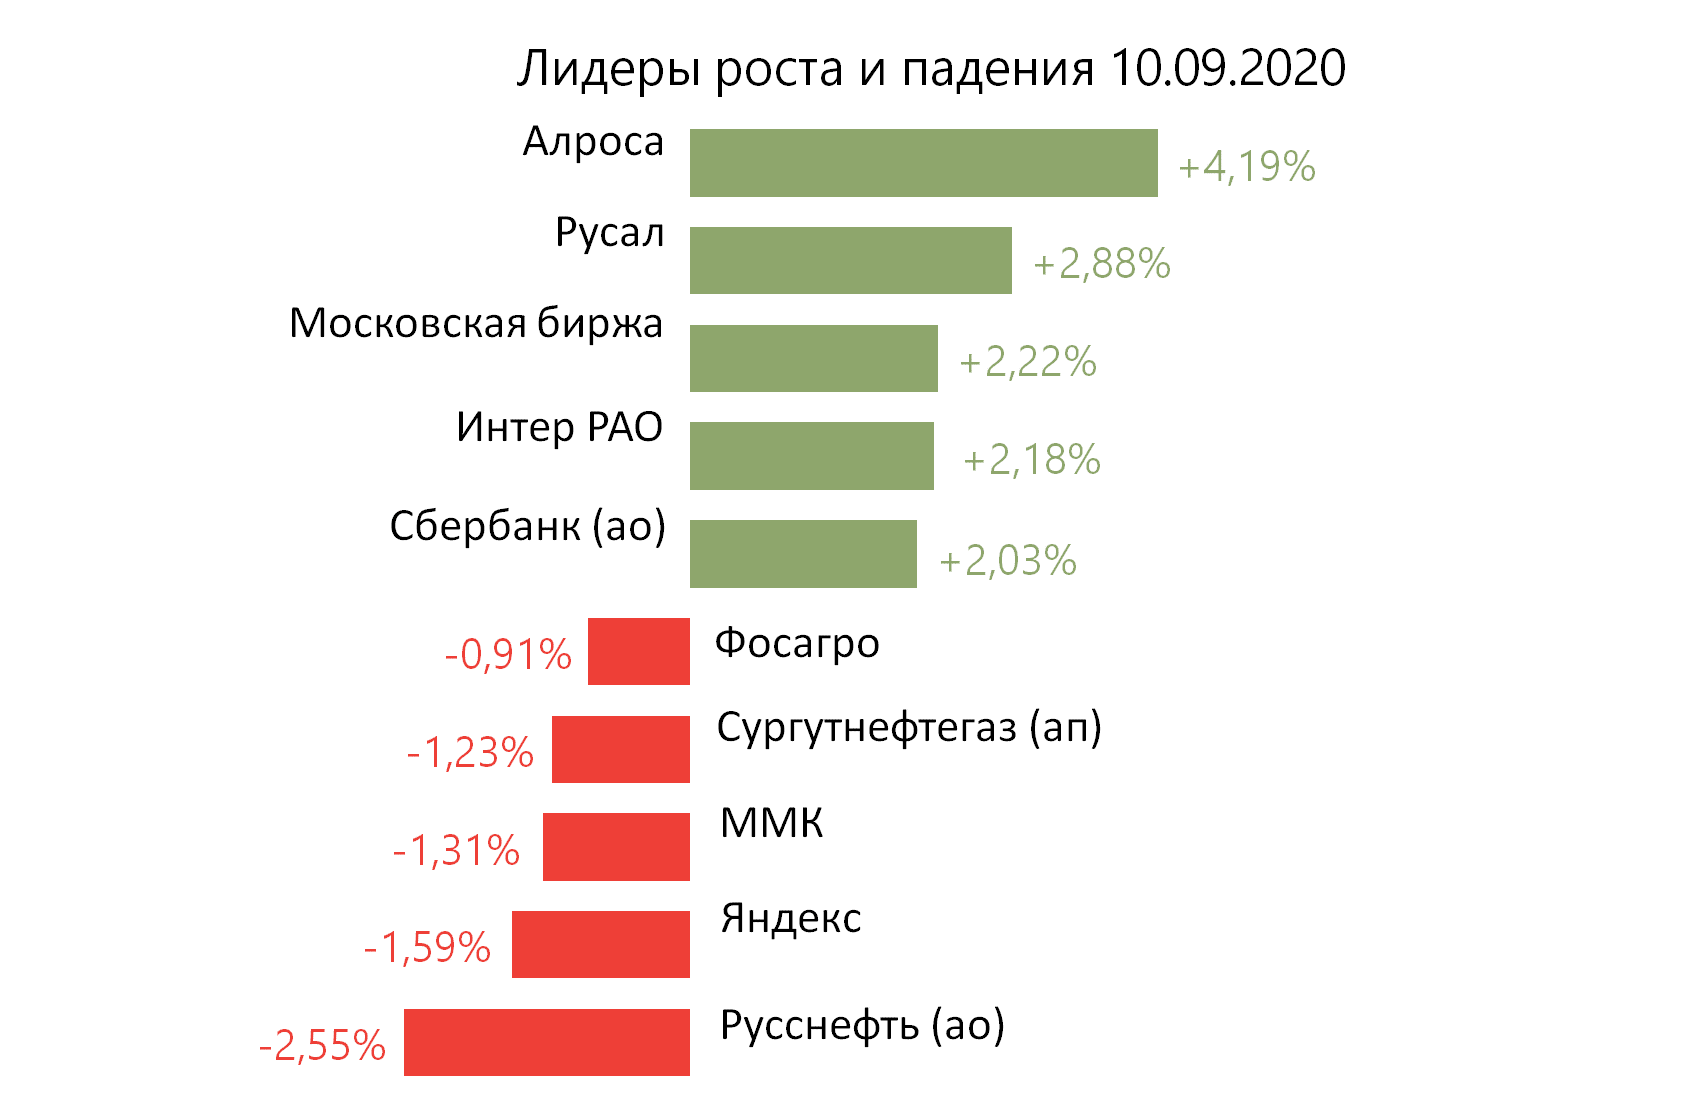 Лидеры роста и падения российского рынка на 10 сентября